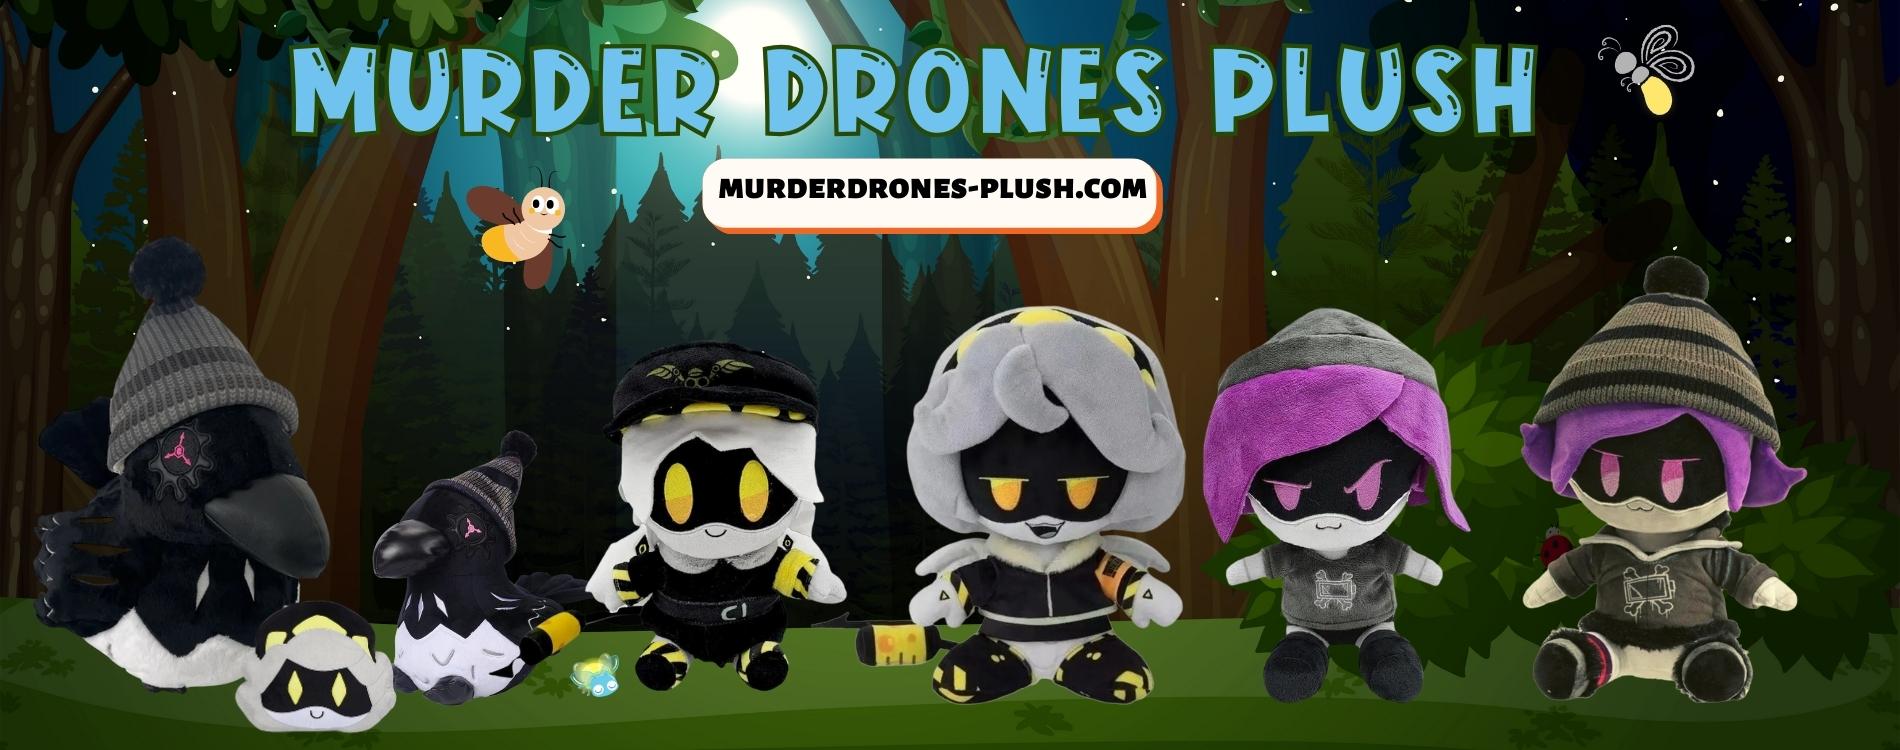 Murder Drones plush banner